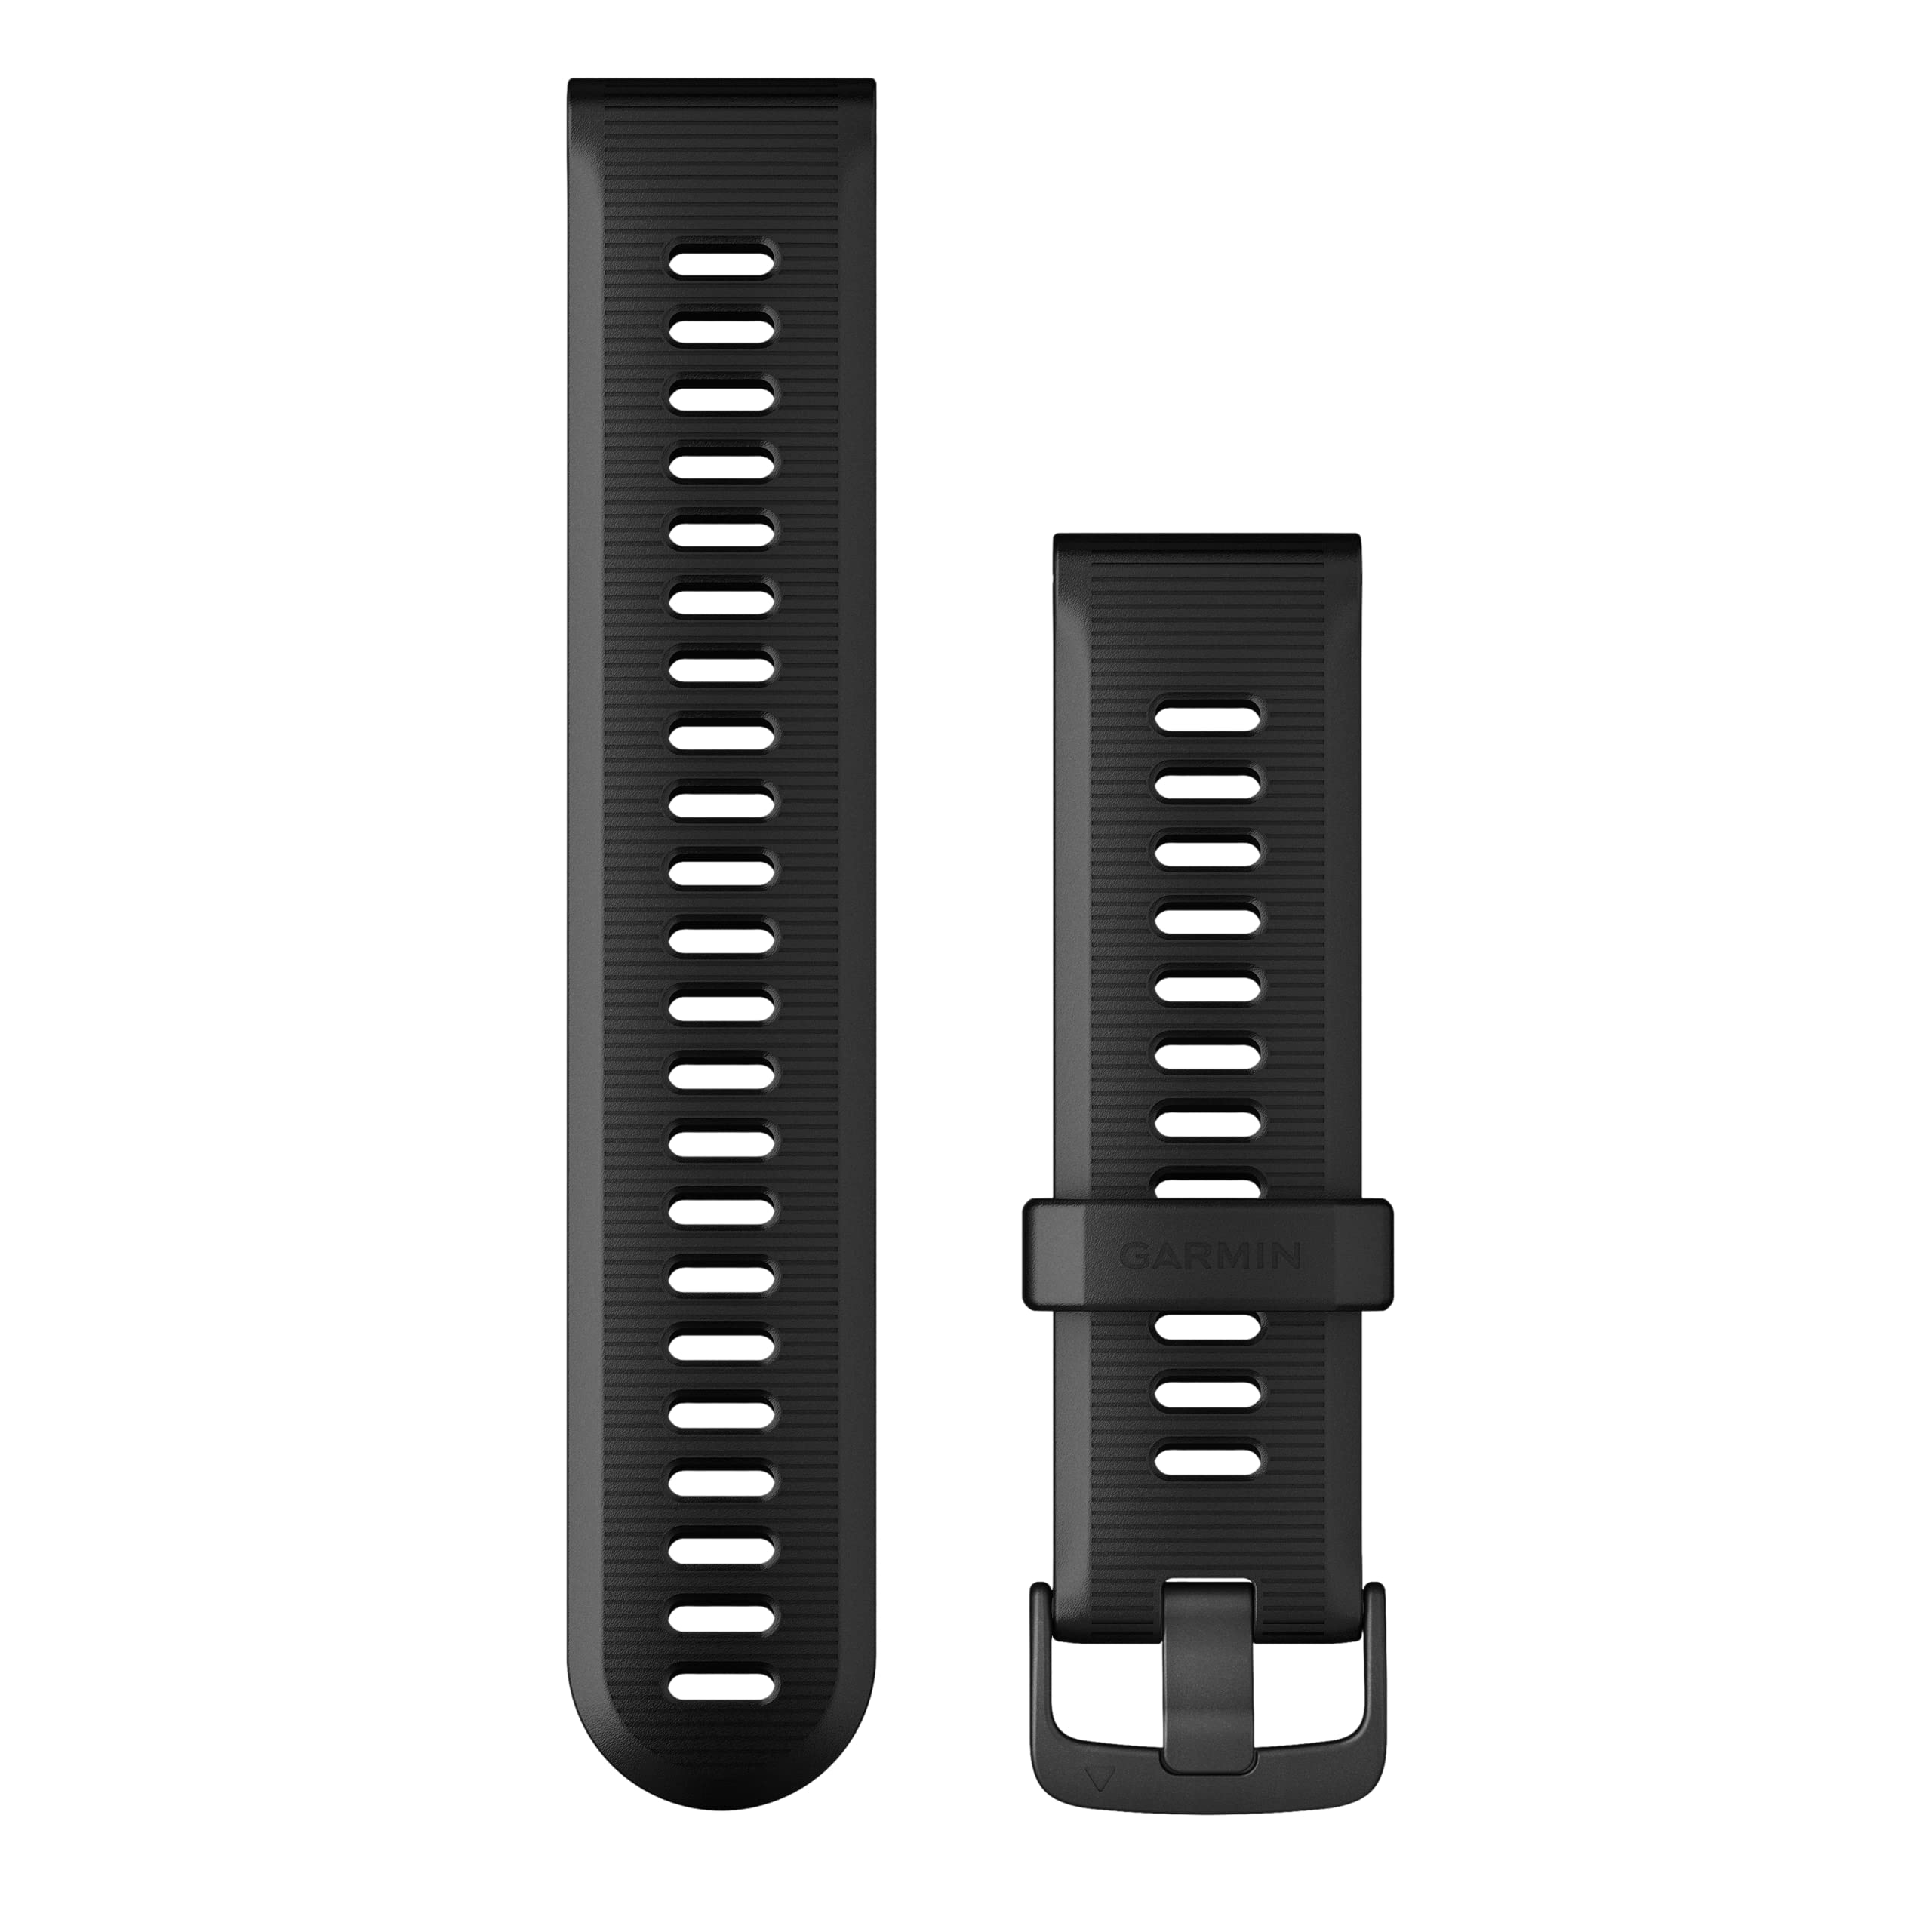 Garmin Wechsel-Armband, 22mm, Silikon, Schwarz, passend für Forerunner 945/935, einfach ein- und ausklicken, Wechsel ohne Werkzeug möglich